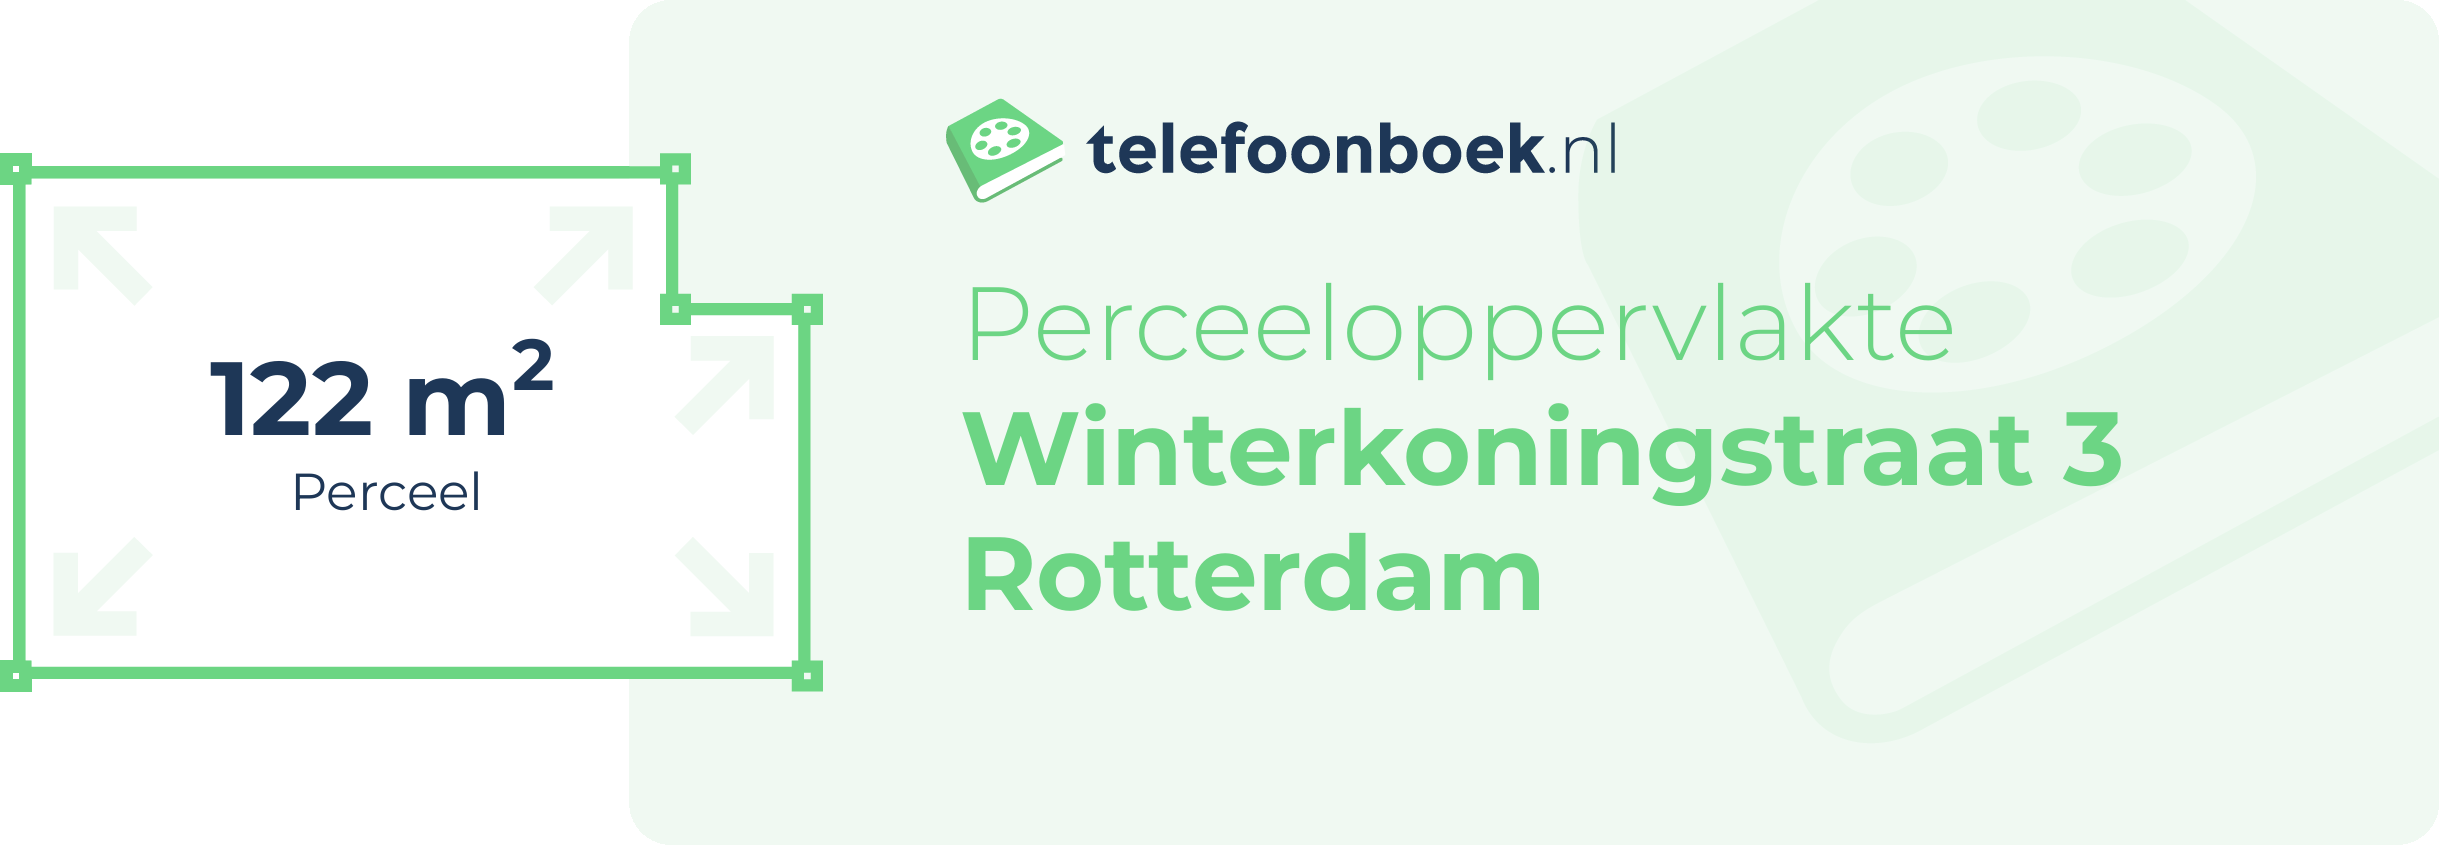 Perceeloppervlakte Winterkoningstraat 3 Rotterdam